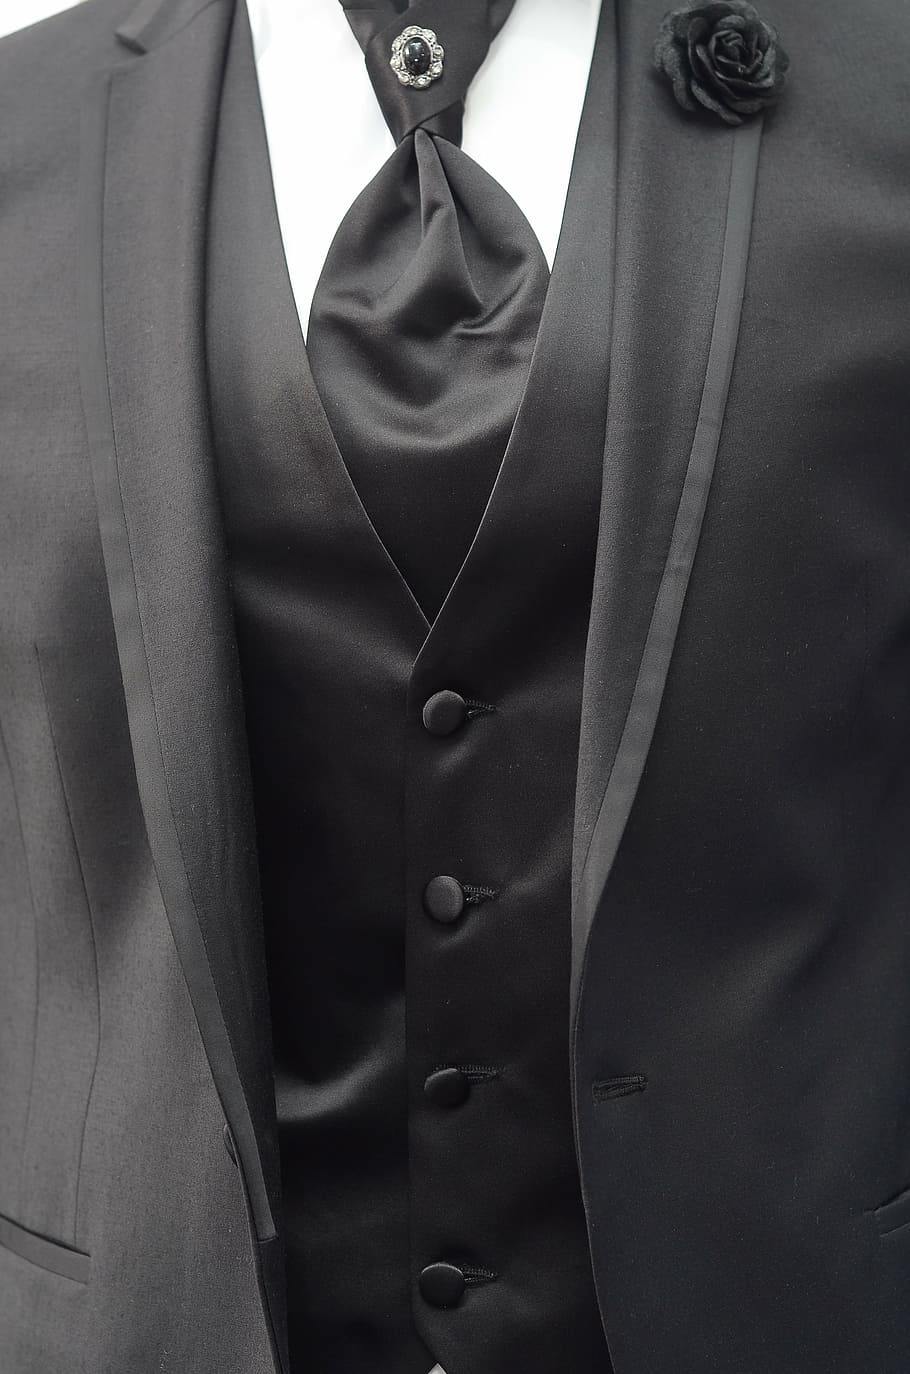 person, wearing, black, notched, lapel suit jacket, suit, tie, men, formalwear, button down shirt